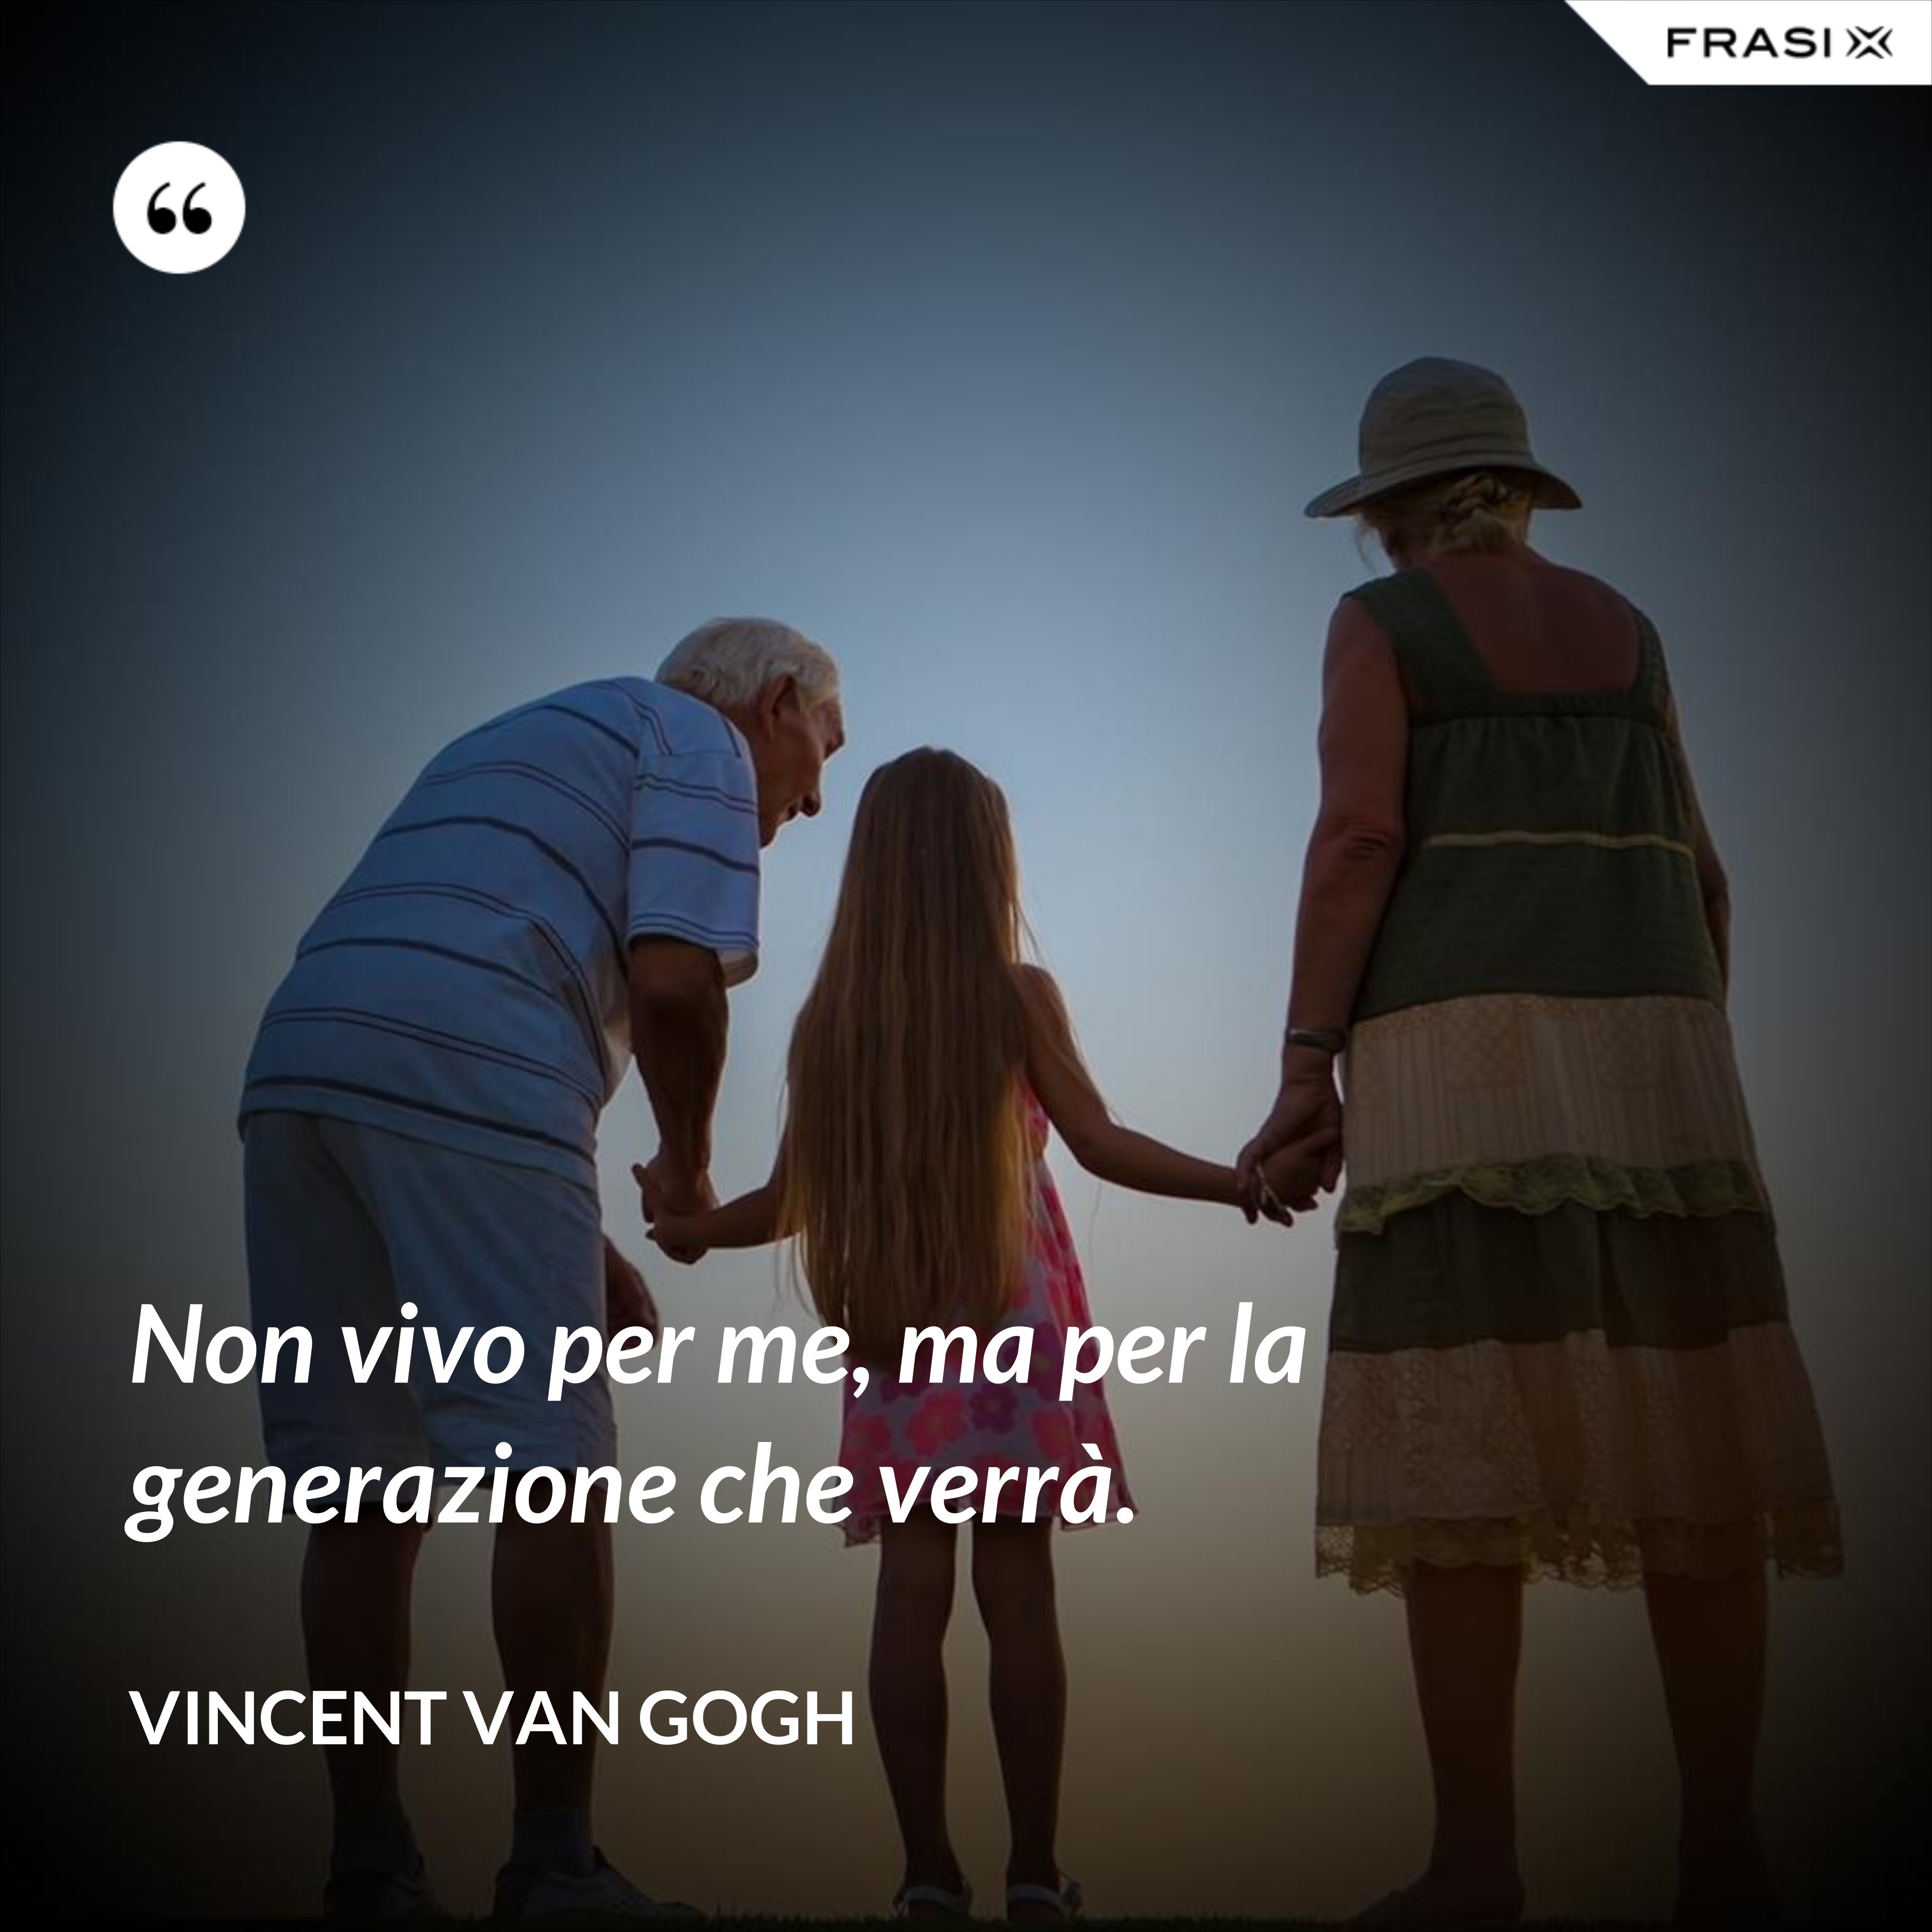 Non vivo per me, ma per la generazione che verrà. - Vincent Van Gogh